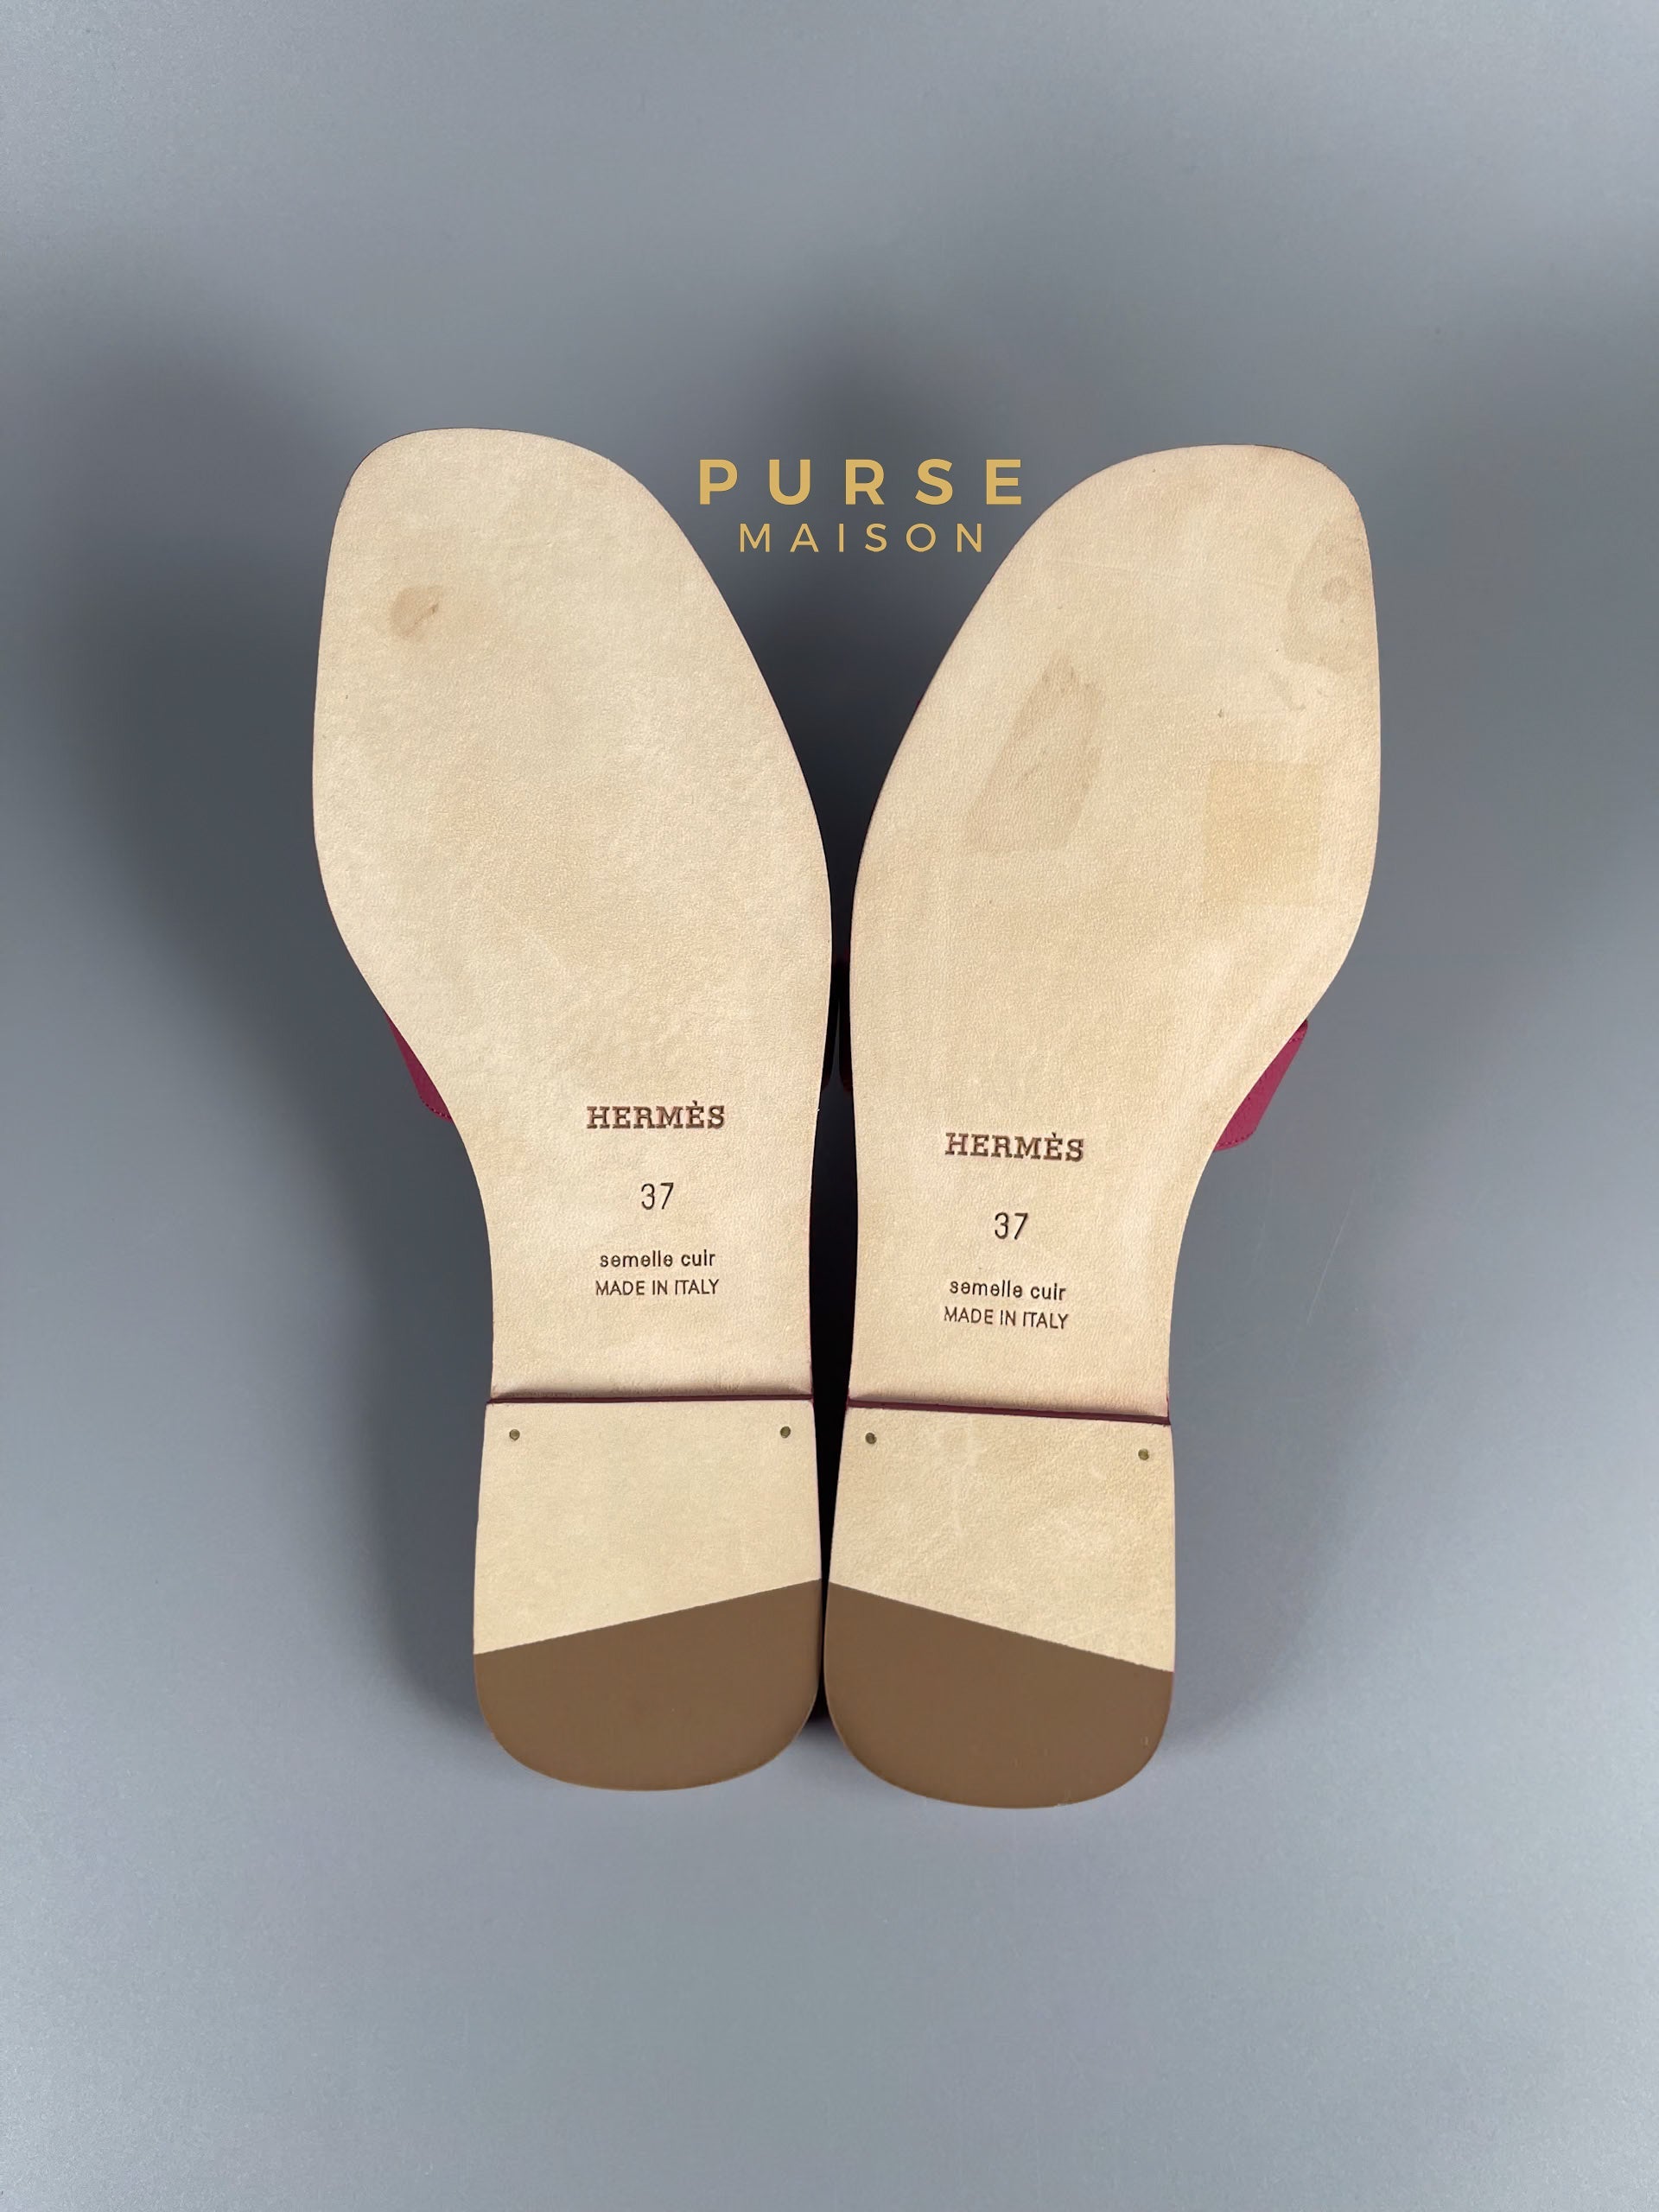 Hermes Oran Sandals Rose Magenta Size 37 EU (24 cm) | Purse Maison Luxury Bags Shop